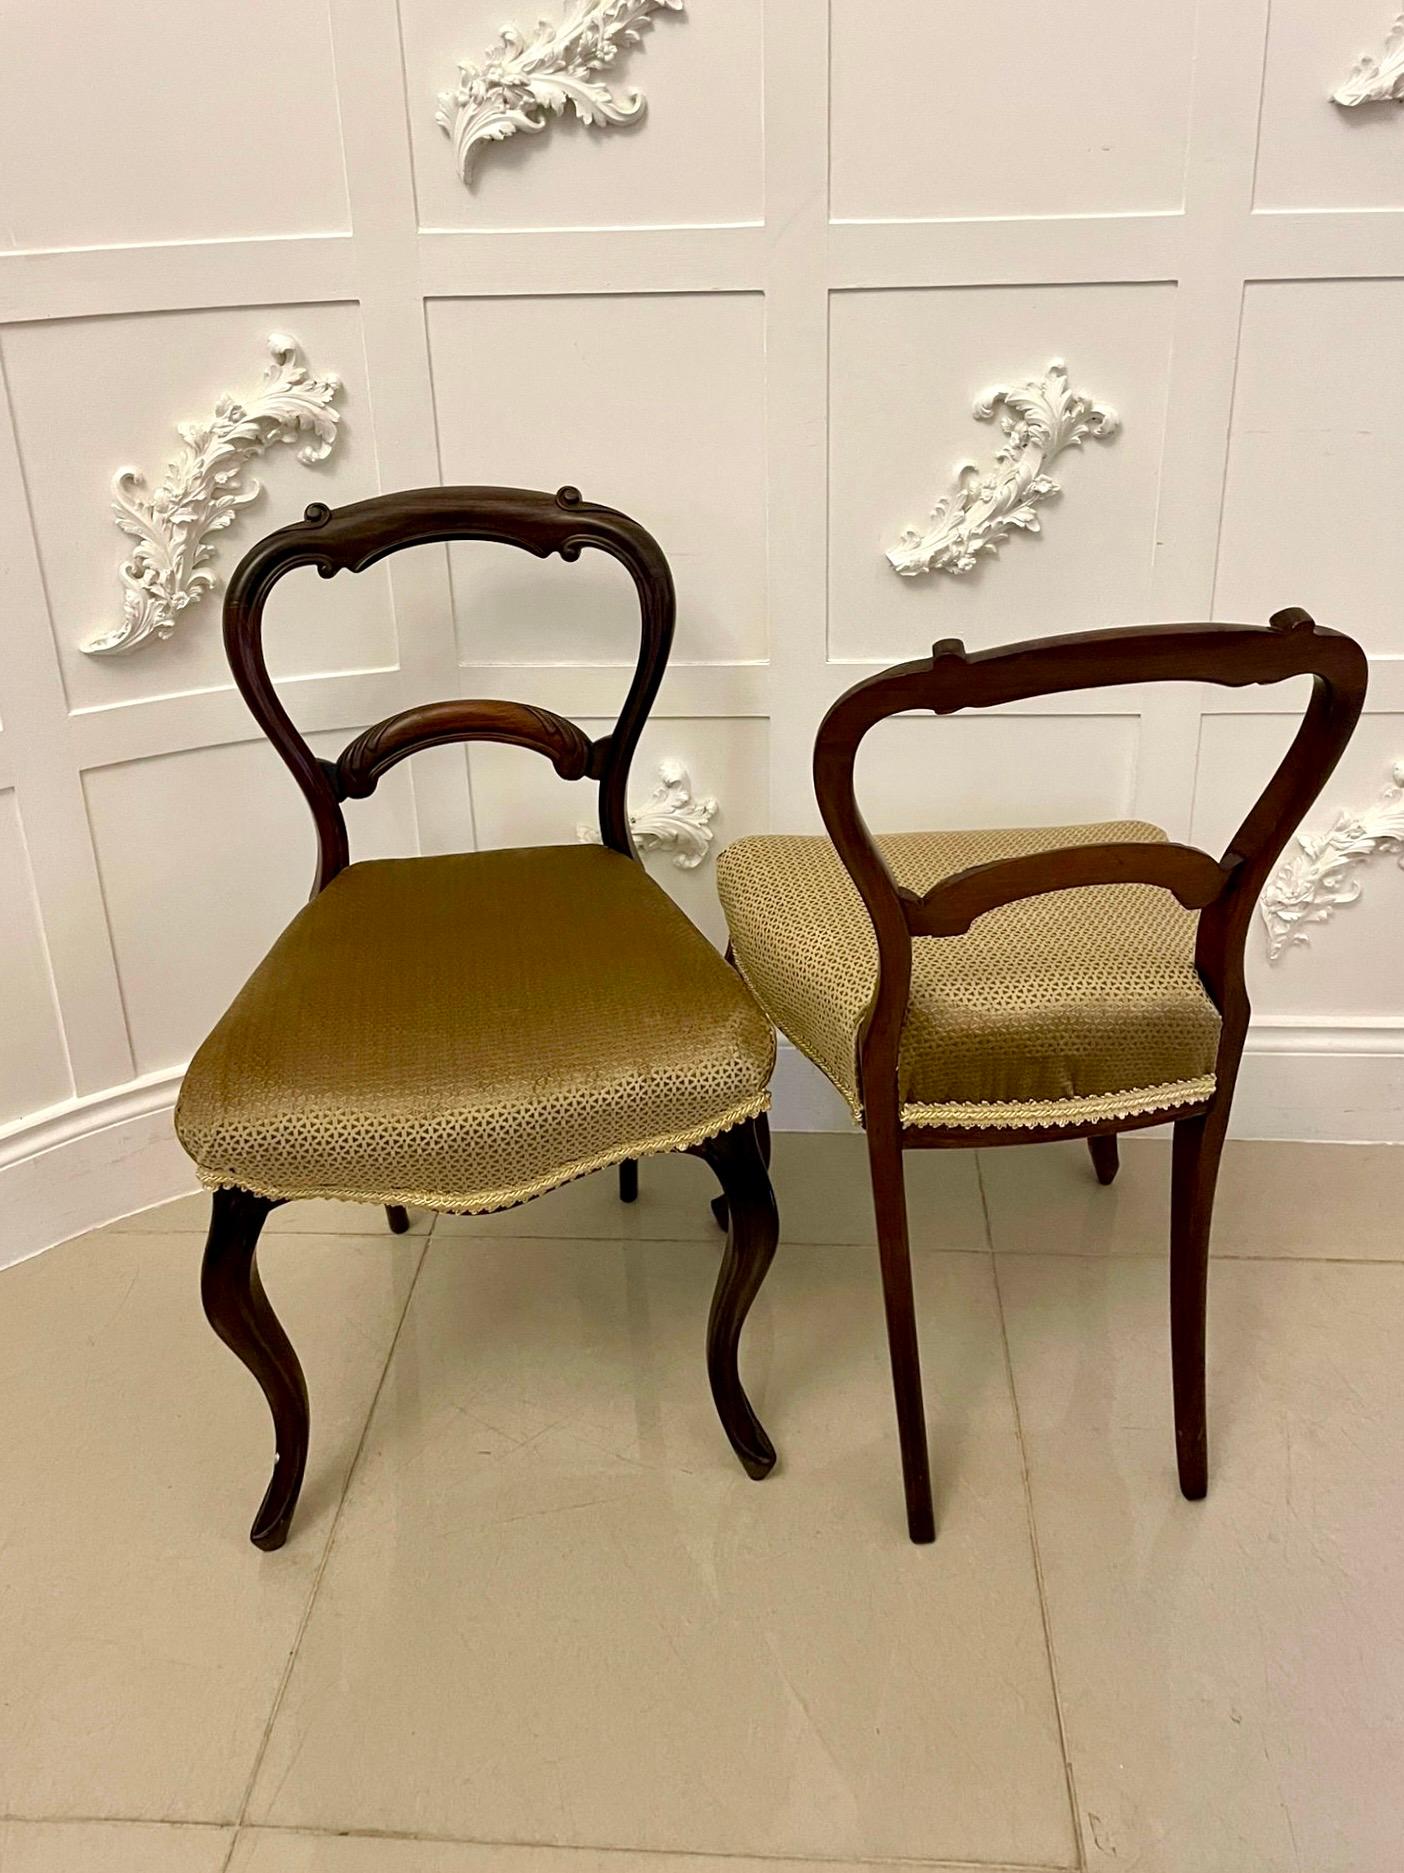 Set von 6 antiken viktorianischen Qualität Palisander Esszimmerstühle mit einer Qualität Palisander geformt obere Schiene mit geschnitzten Rollen, geschnitzt Splat in der Mitte, neu gepolsterte Sitze in einem hochwertigen goldfarbenen Stoff stehen